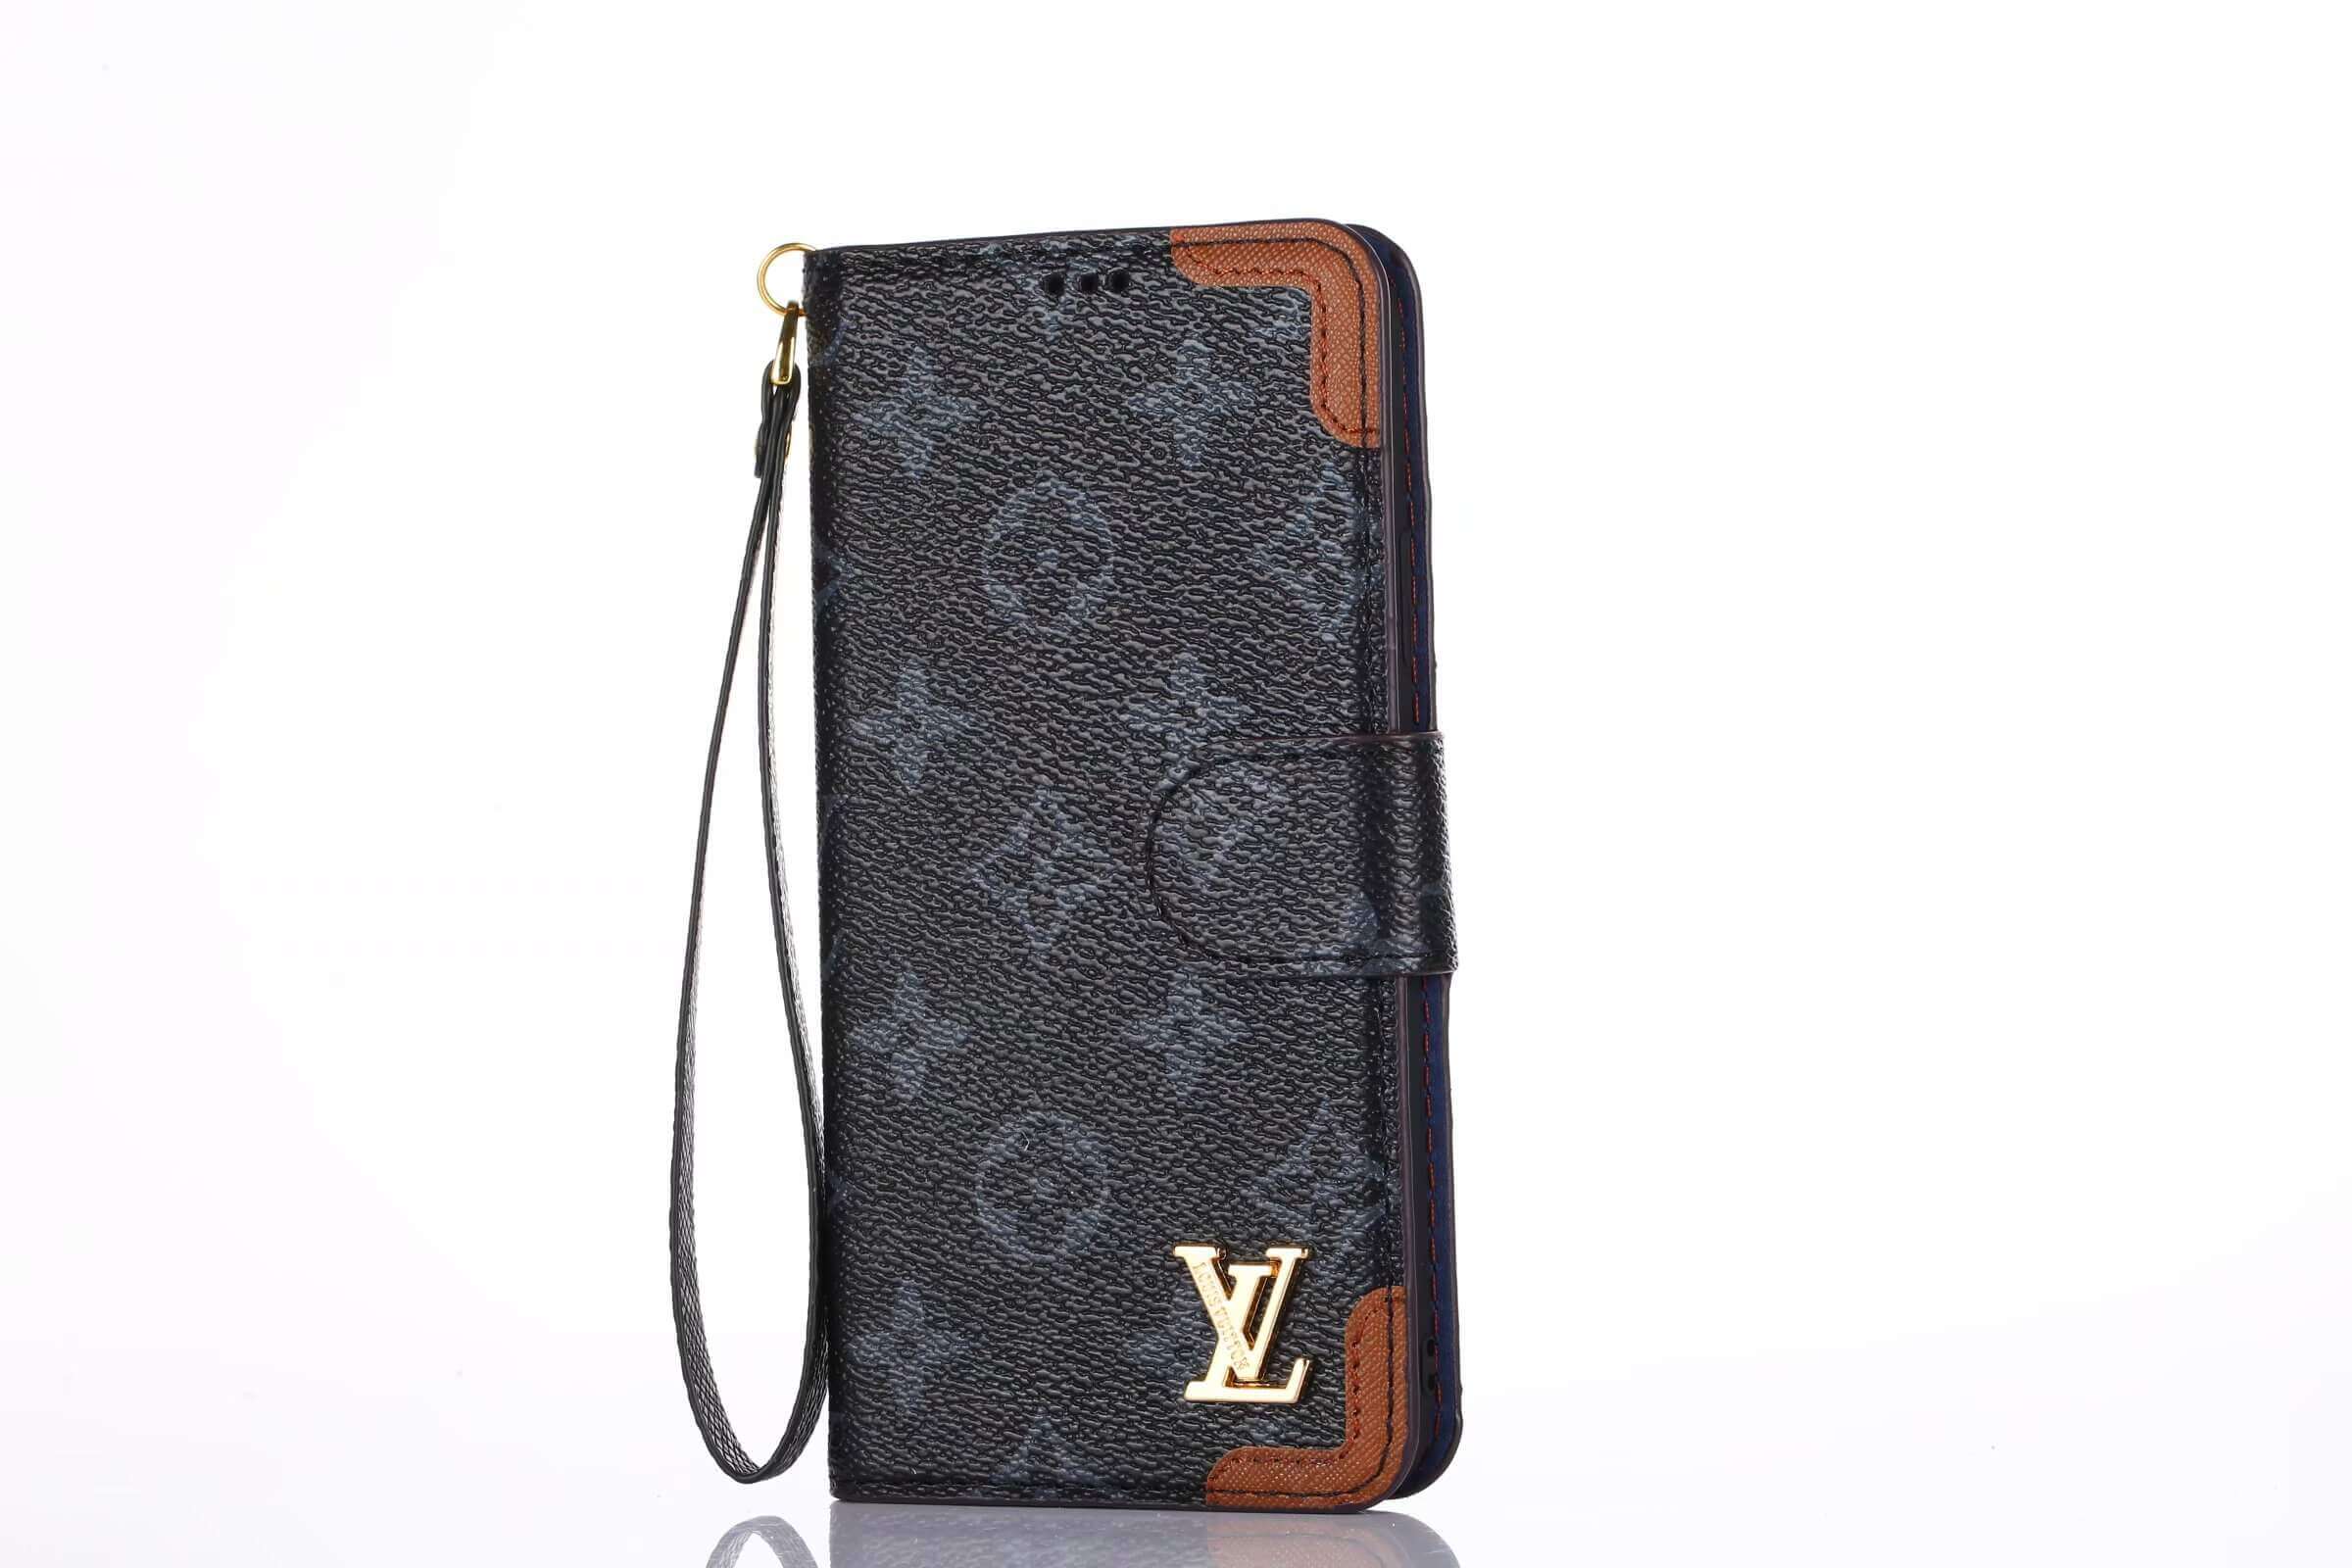 Authentic Louis Vuitton Monogram Phone Folio Case iPhone 7 Plus